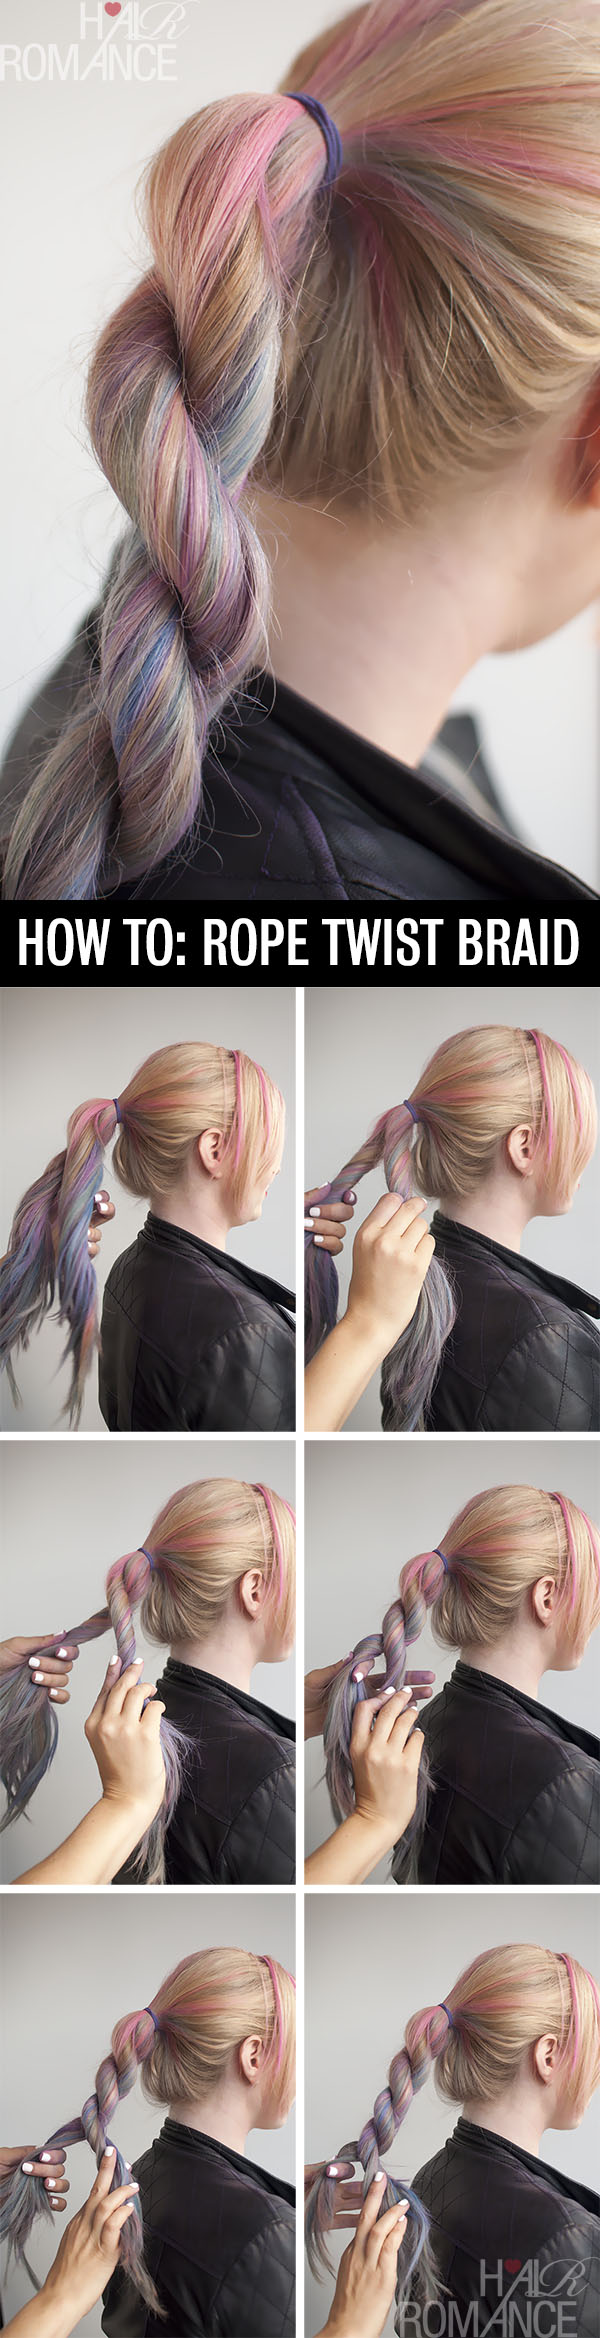 A Rope Twist Braid